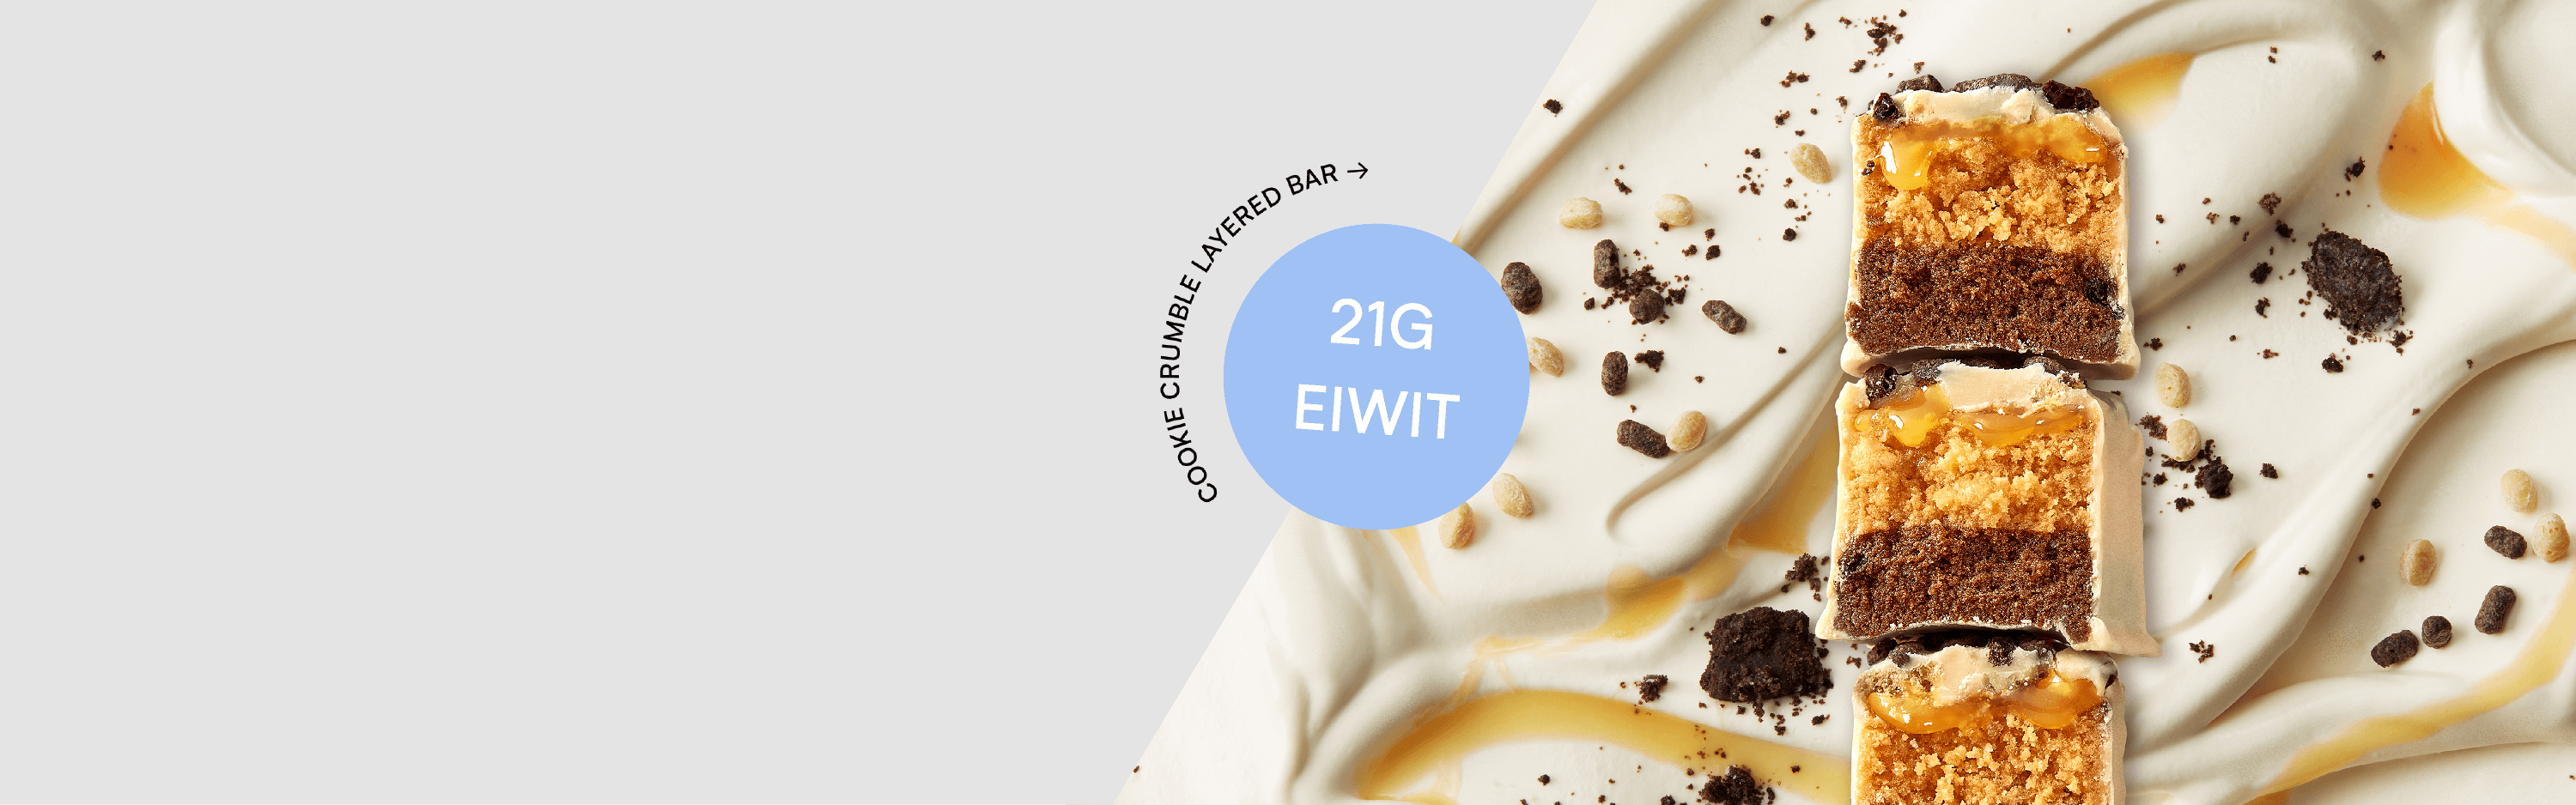 Gezonde snacks van Myprotein met de nieuwe cookie crumble layered bar met 21g eiwit